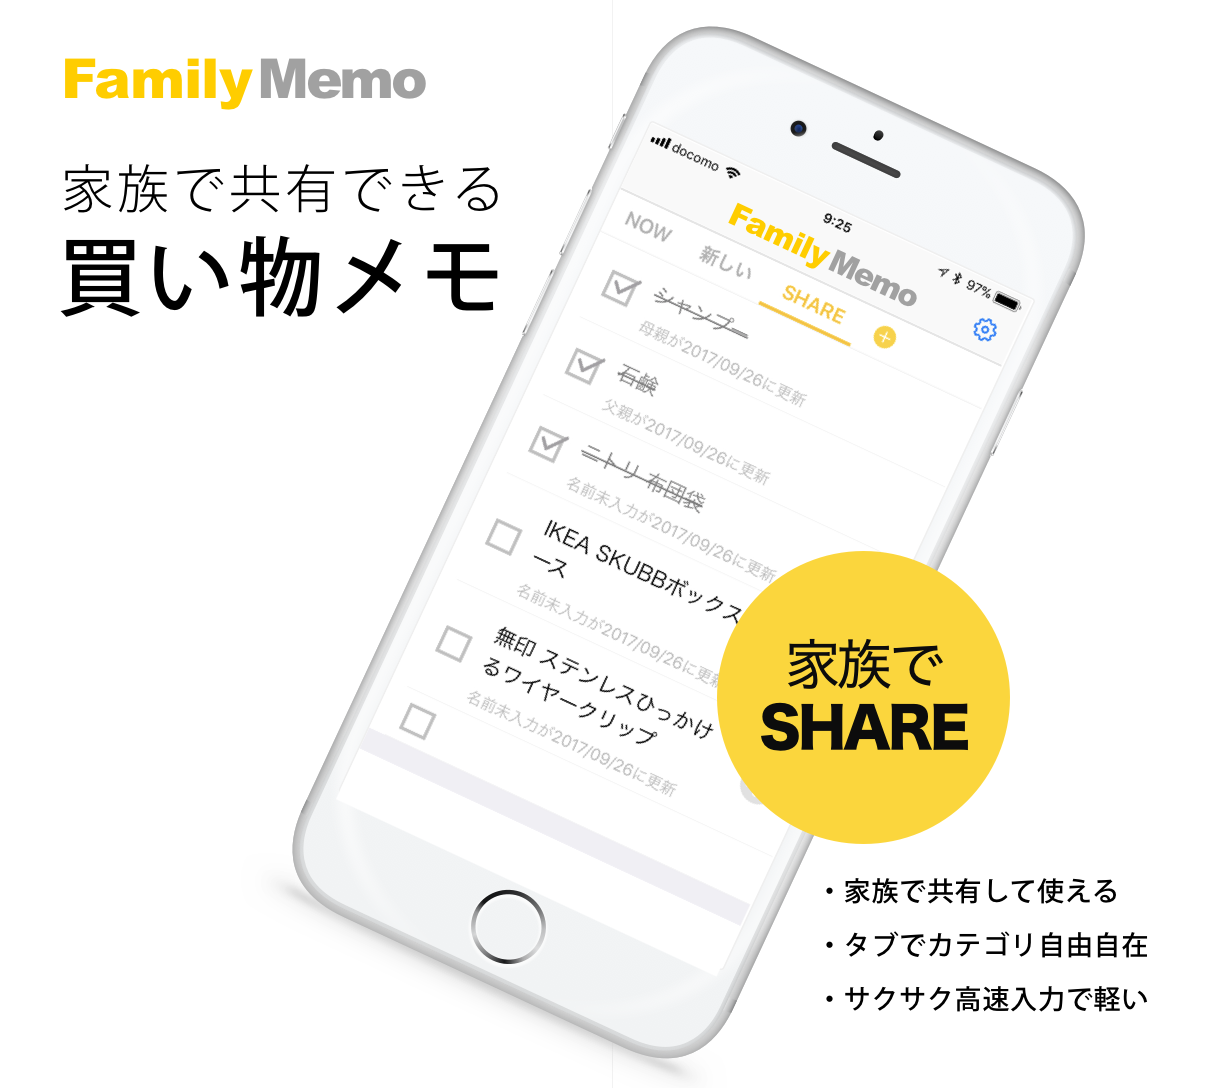 買い物リストを共有できるiphone アプリ Familymemo にアプリ上からメッセージを送る機能を追加しアップデート イリテク株式会社のプレスリリース